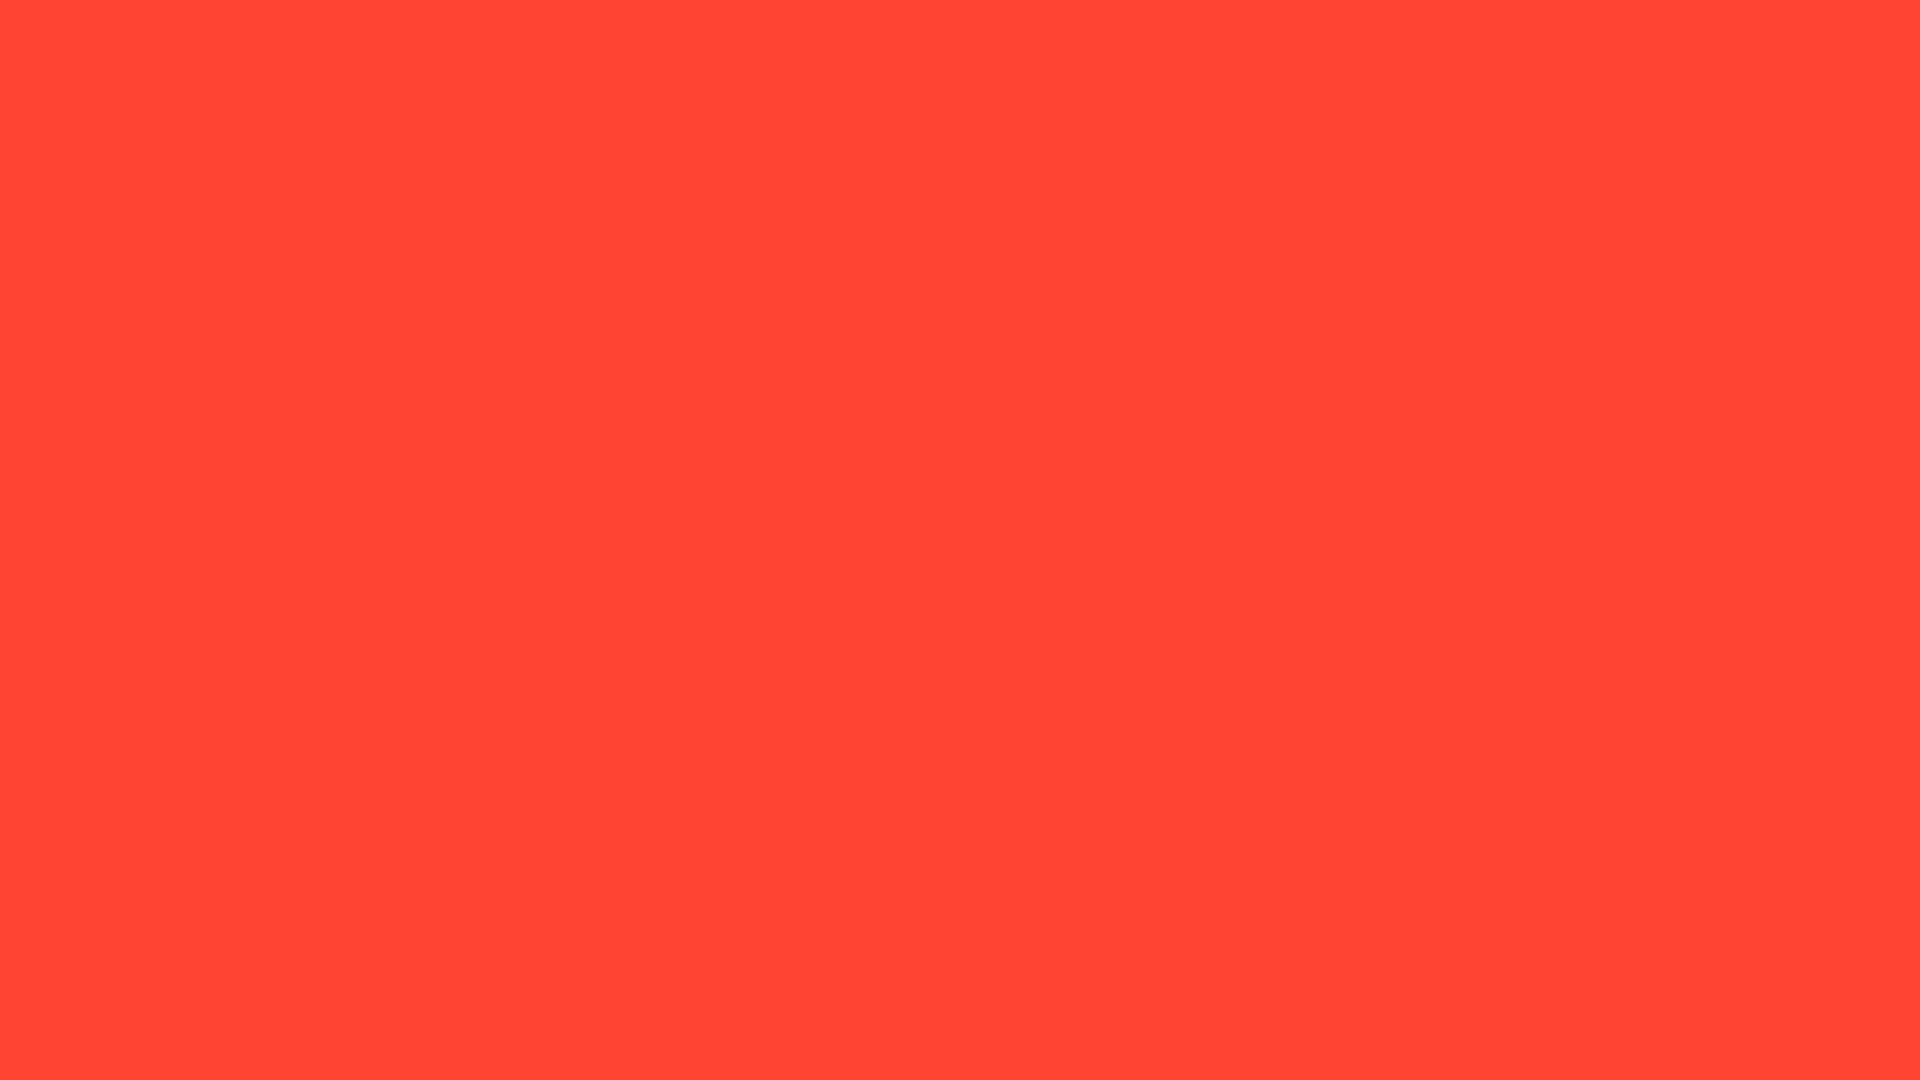 Mã màu HTML đỏ cam - Bạn muốn biết mã màu HTML của màu đỏ cam để sử dụng cho trang web của mình? Hãy xem ngay hình ảnh liên quan để có sự lựa chọn tốt nhất cho dự án của bạn. Mã màu này sẽ mang lại sự tươi sáng và nổi bật cho trang web của bạn.